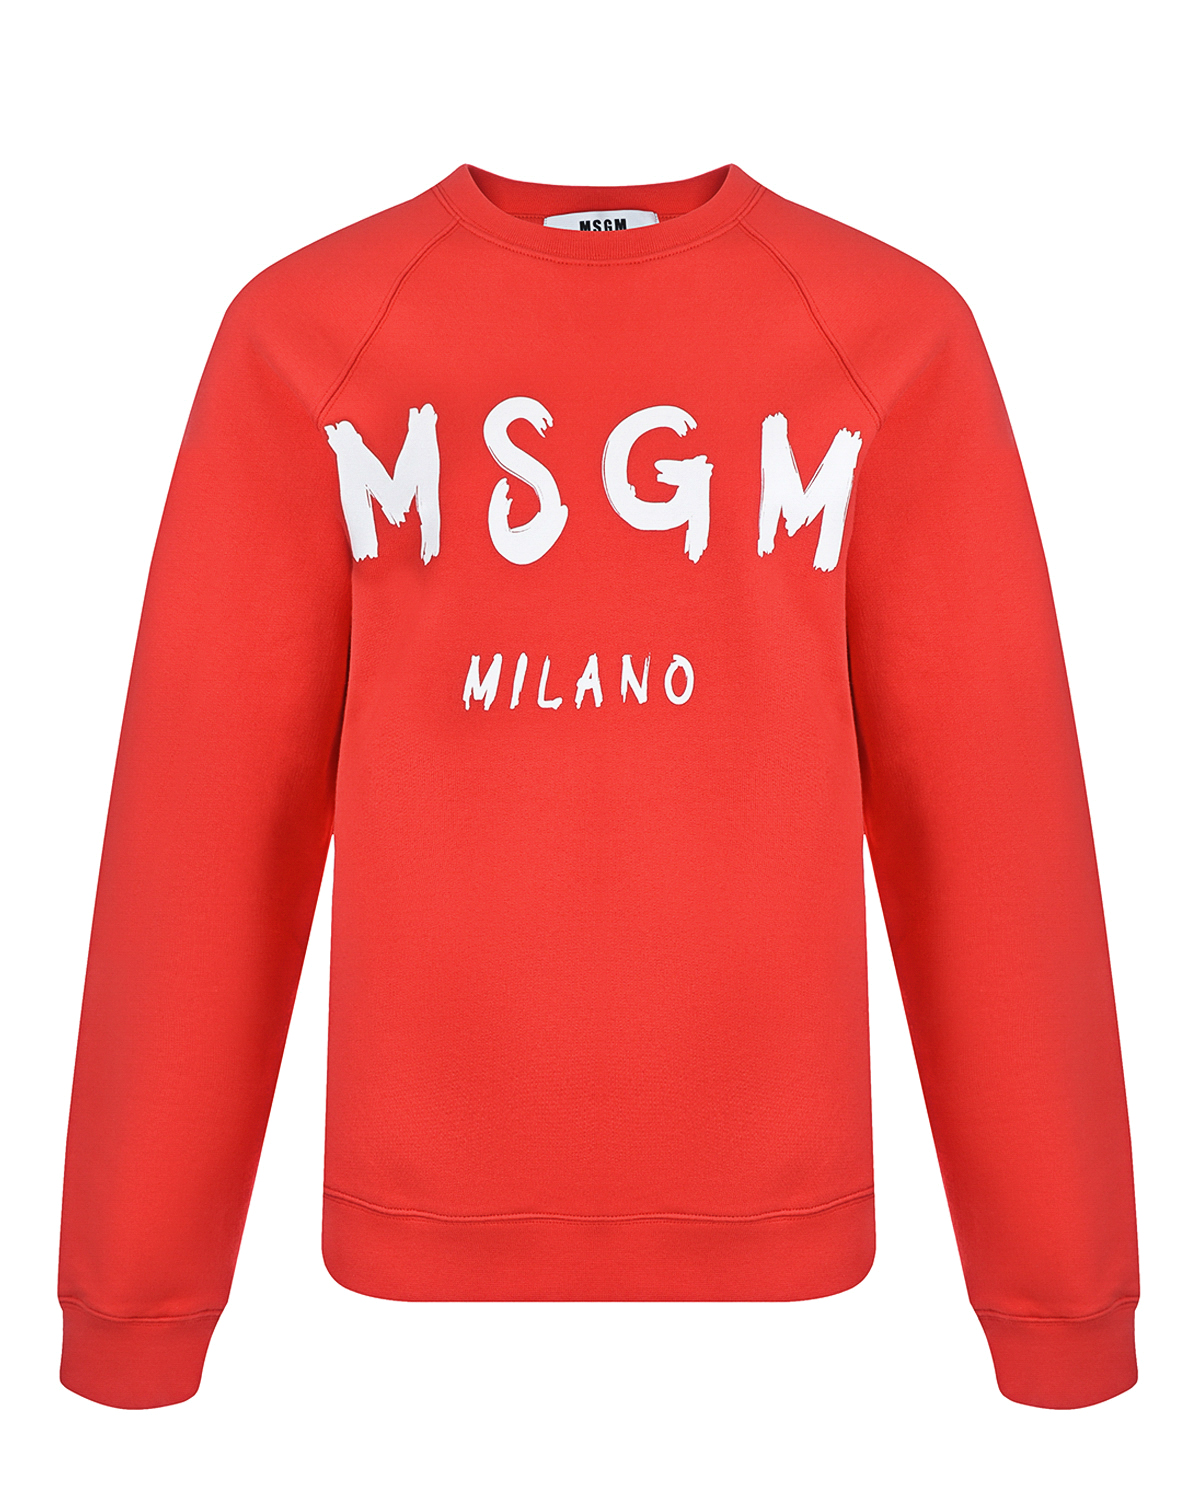 Красный свитшот с белым логотипом MSGM, размер 40 - фото 1